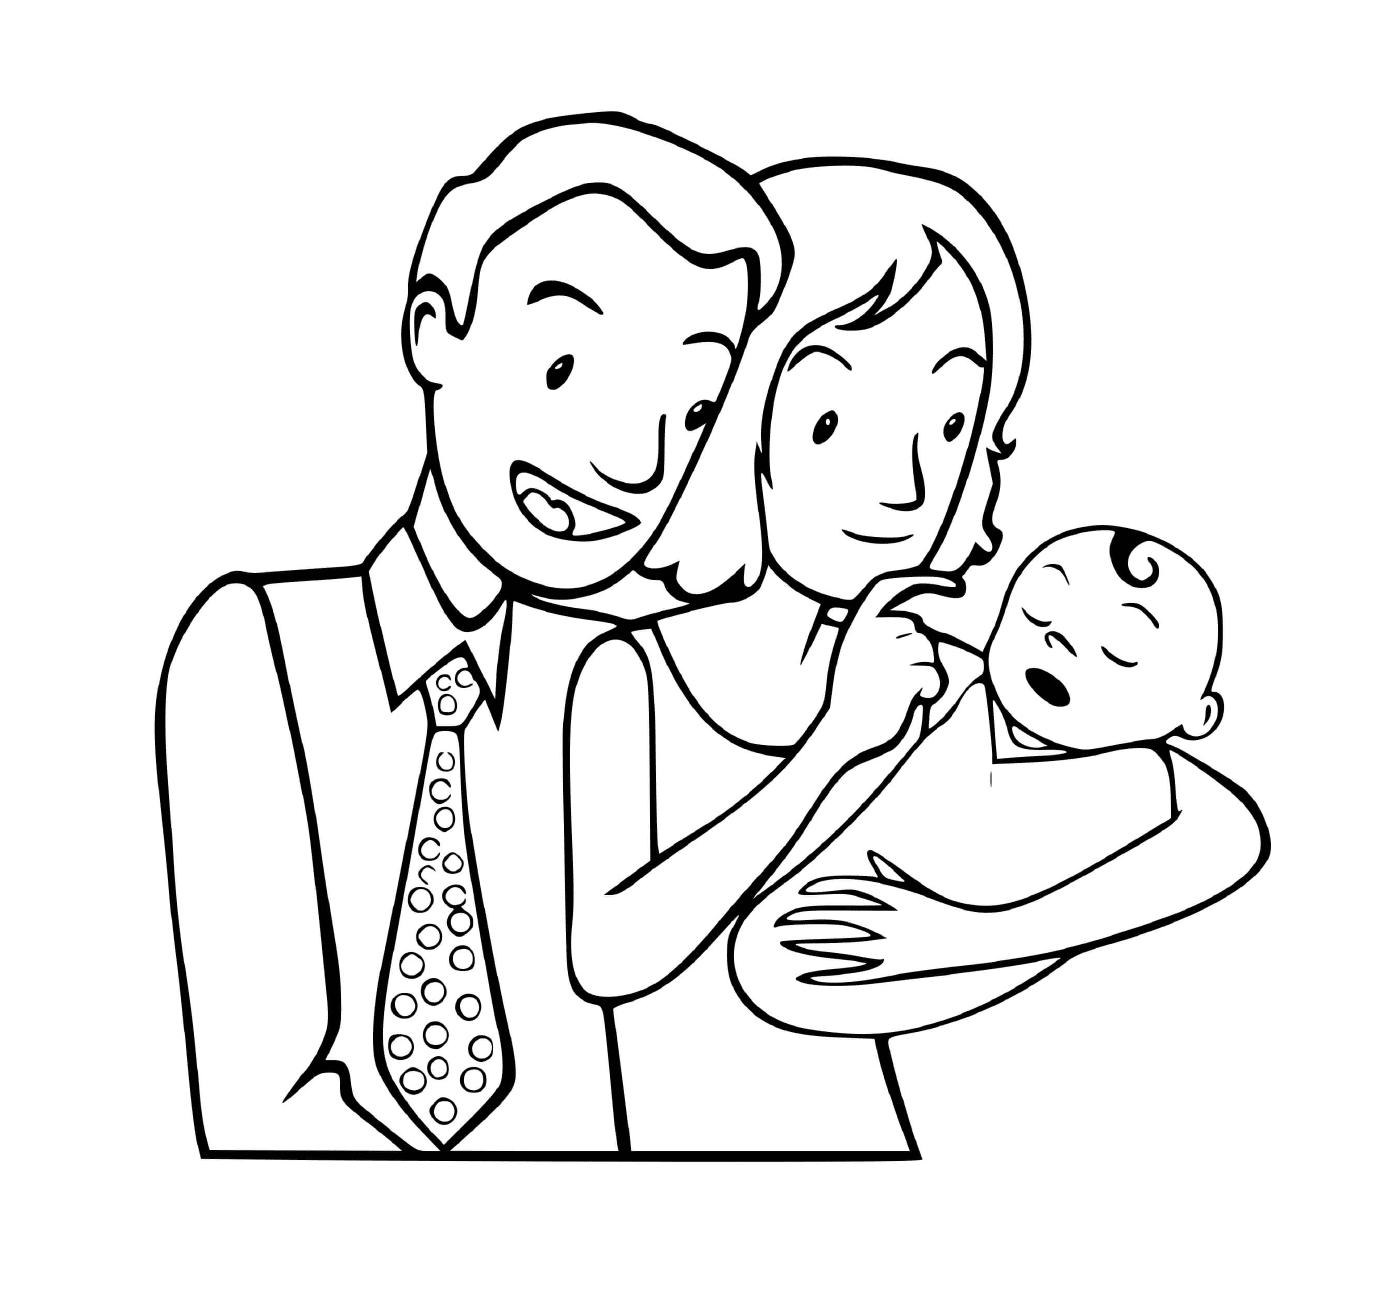  Uma pequena família com um recém-nascido 